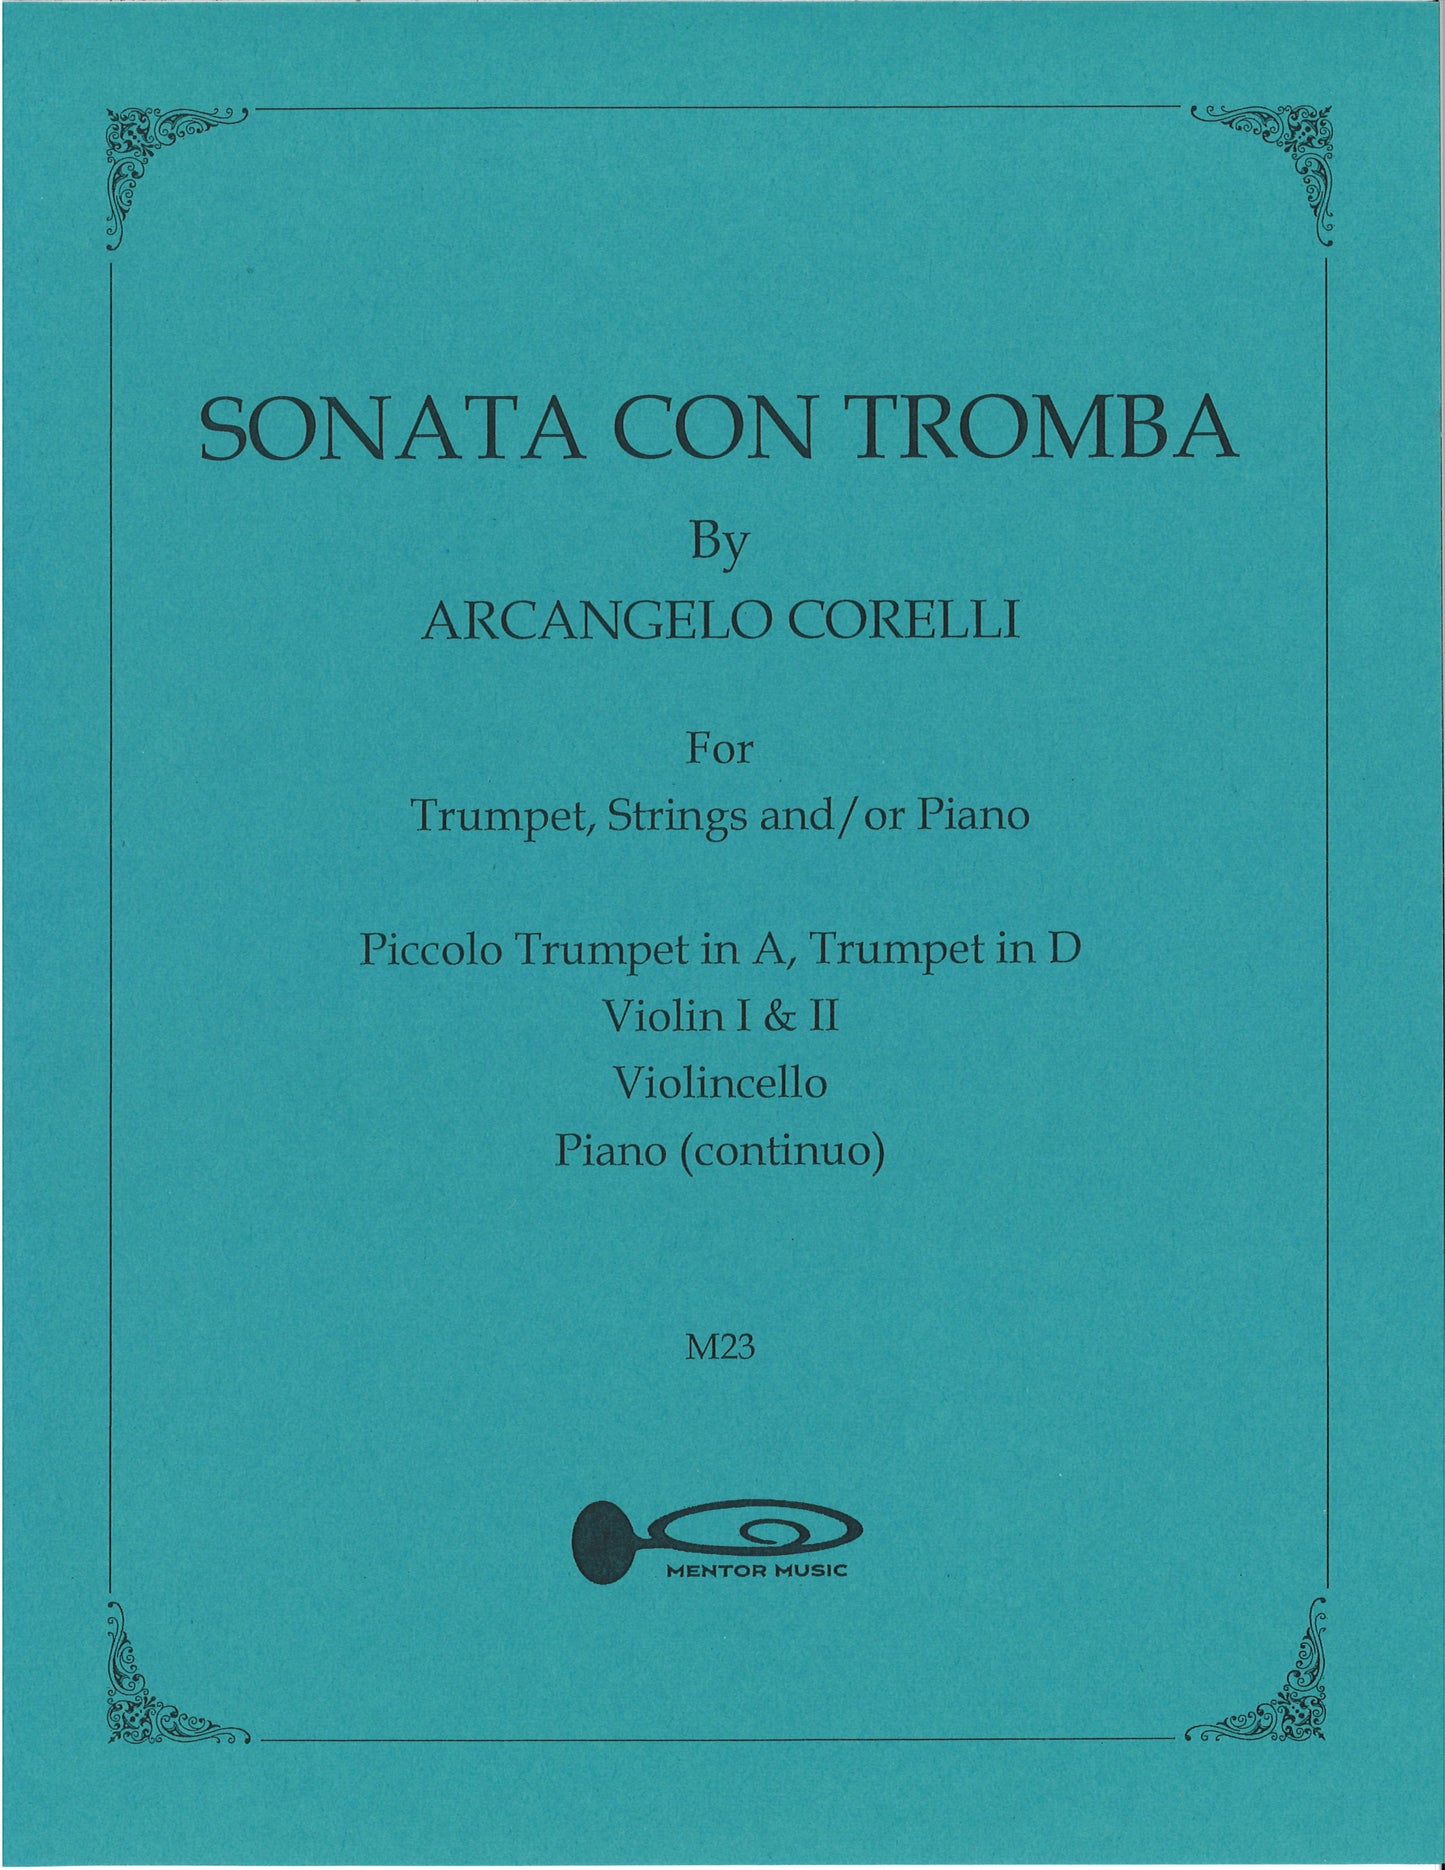 Sonata Con Tromba for Trumpet, Strings and/or Piano